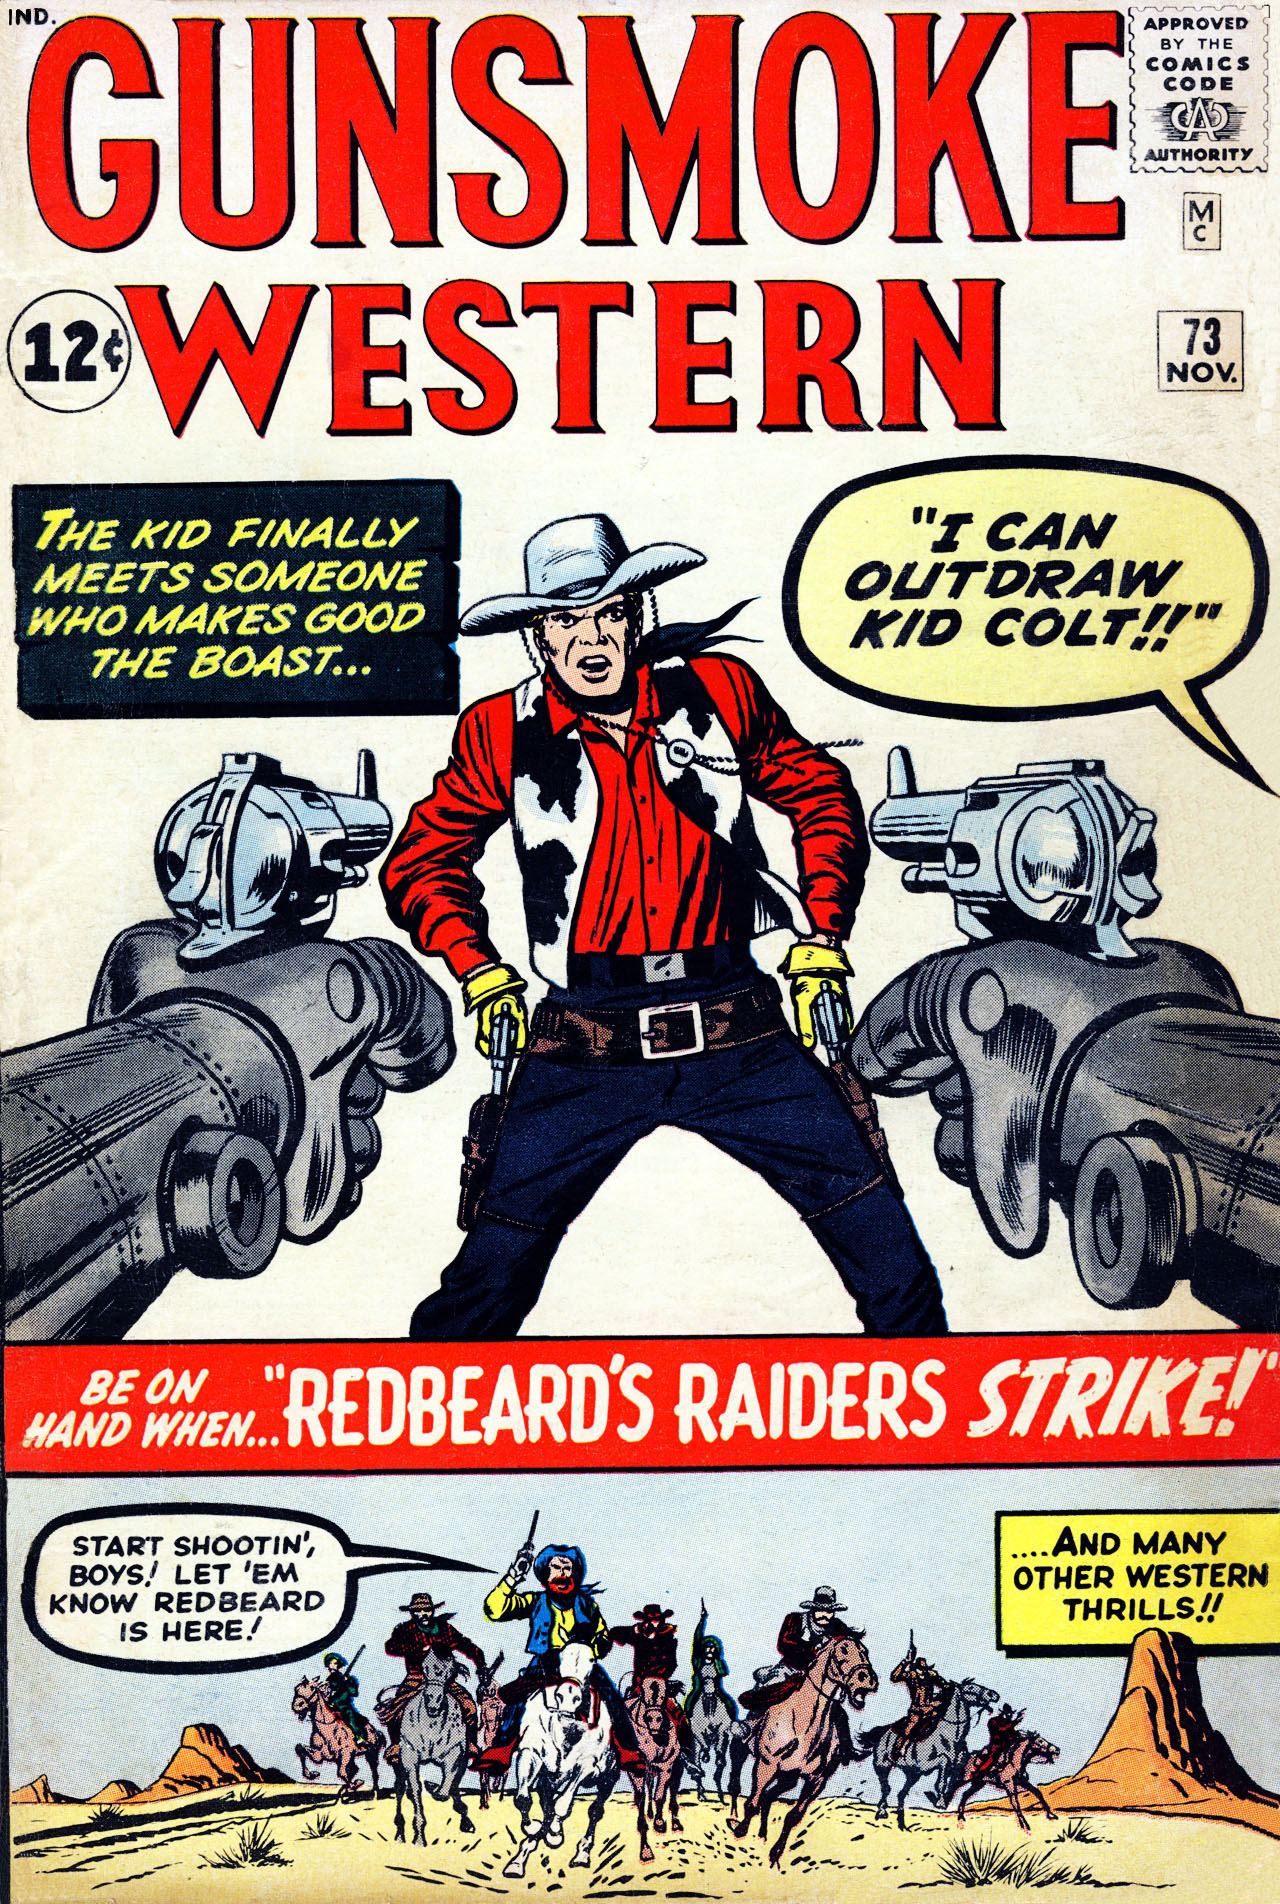 Read online Gunsmoke Western comic -  Issue #73 - 1